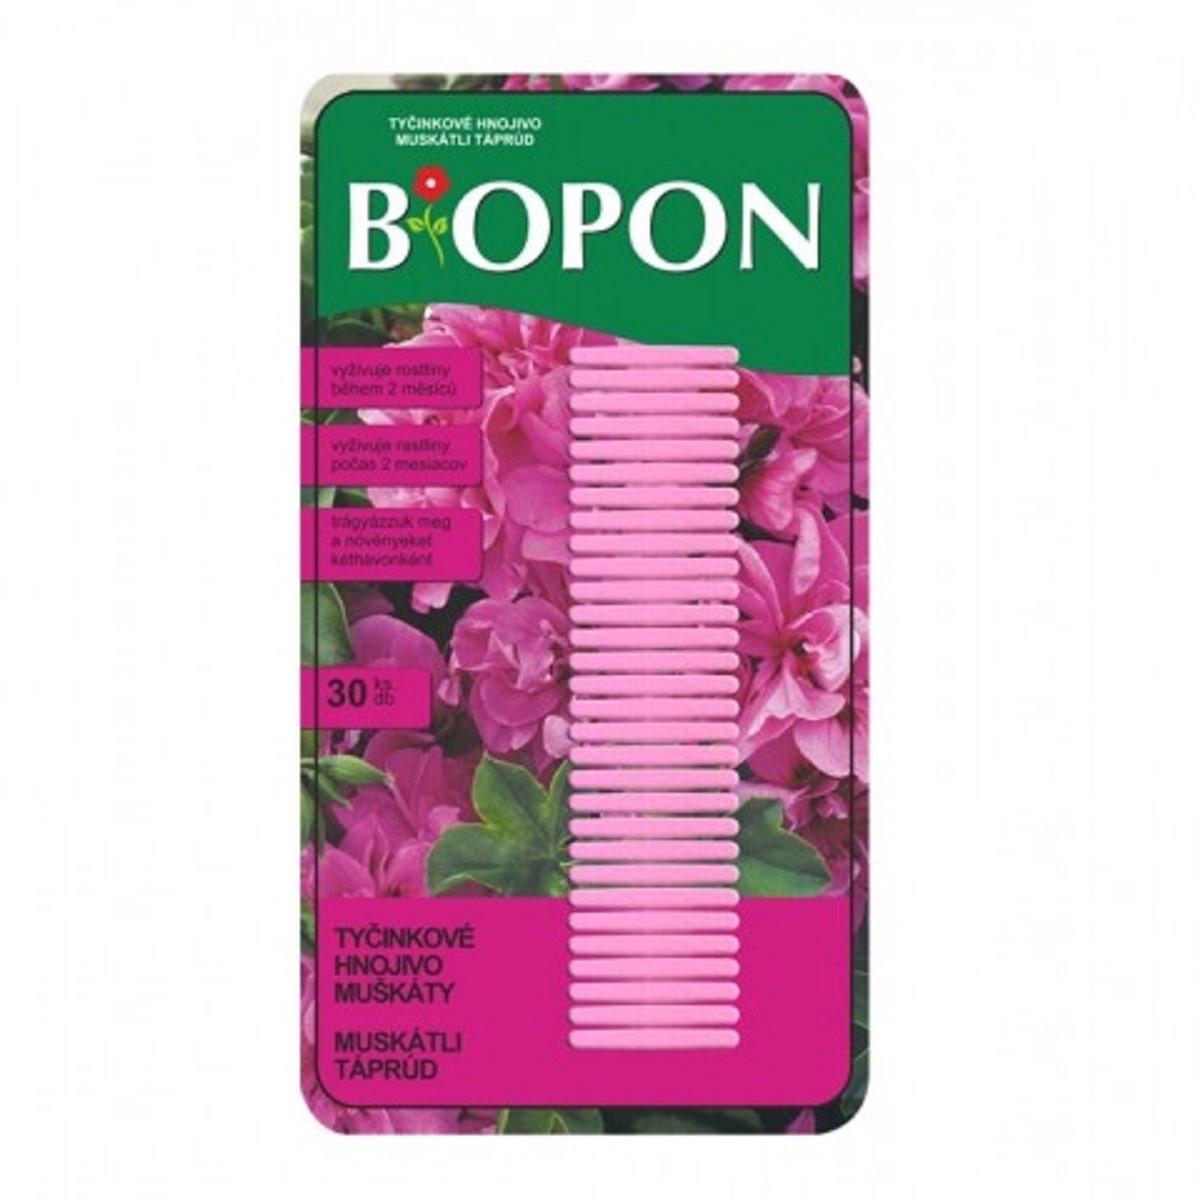 Tyčinkové hnojivo na muškáty - BoPon - hnojivo - 30 ks